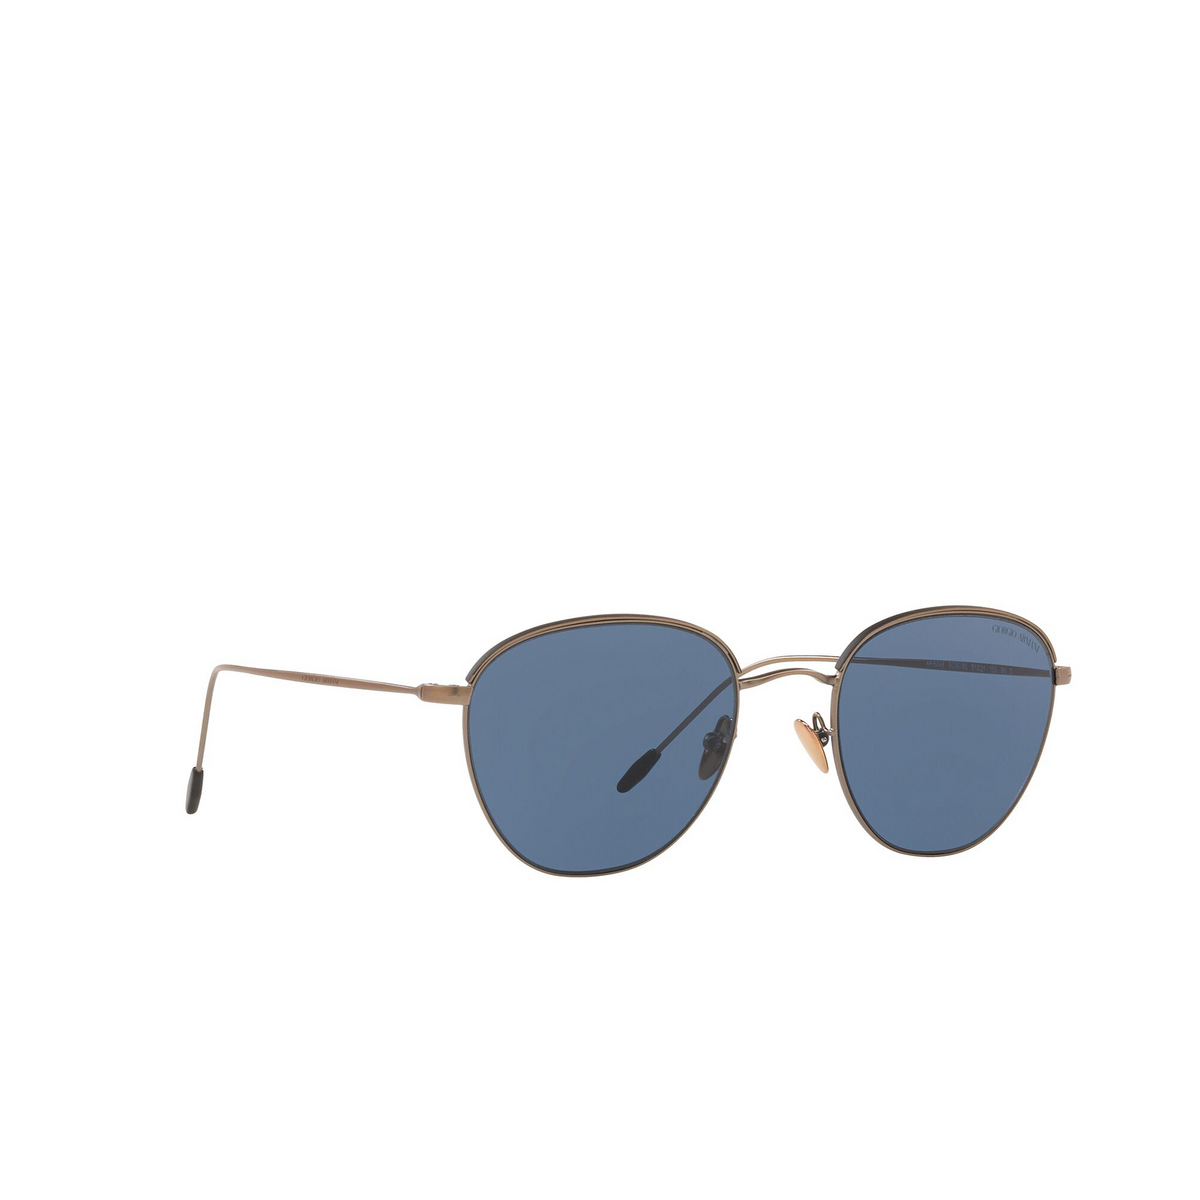 Giorgio Armani® Square Sunglasses: AR6048 color Matte Bronze / Matte Black 300680 - three-quarters view.